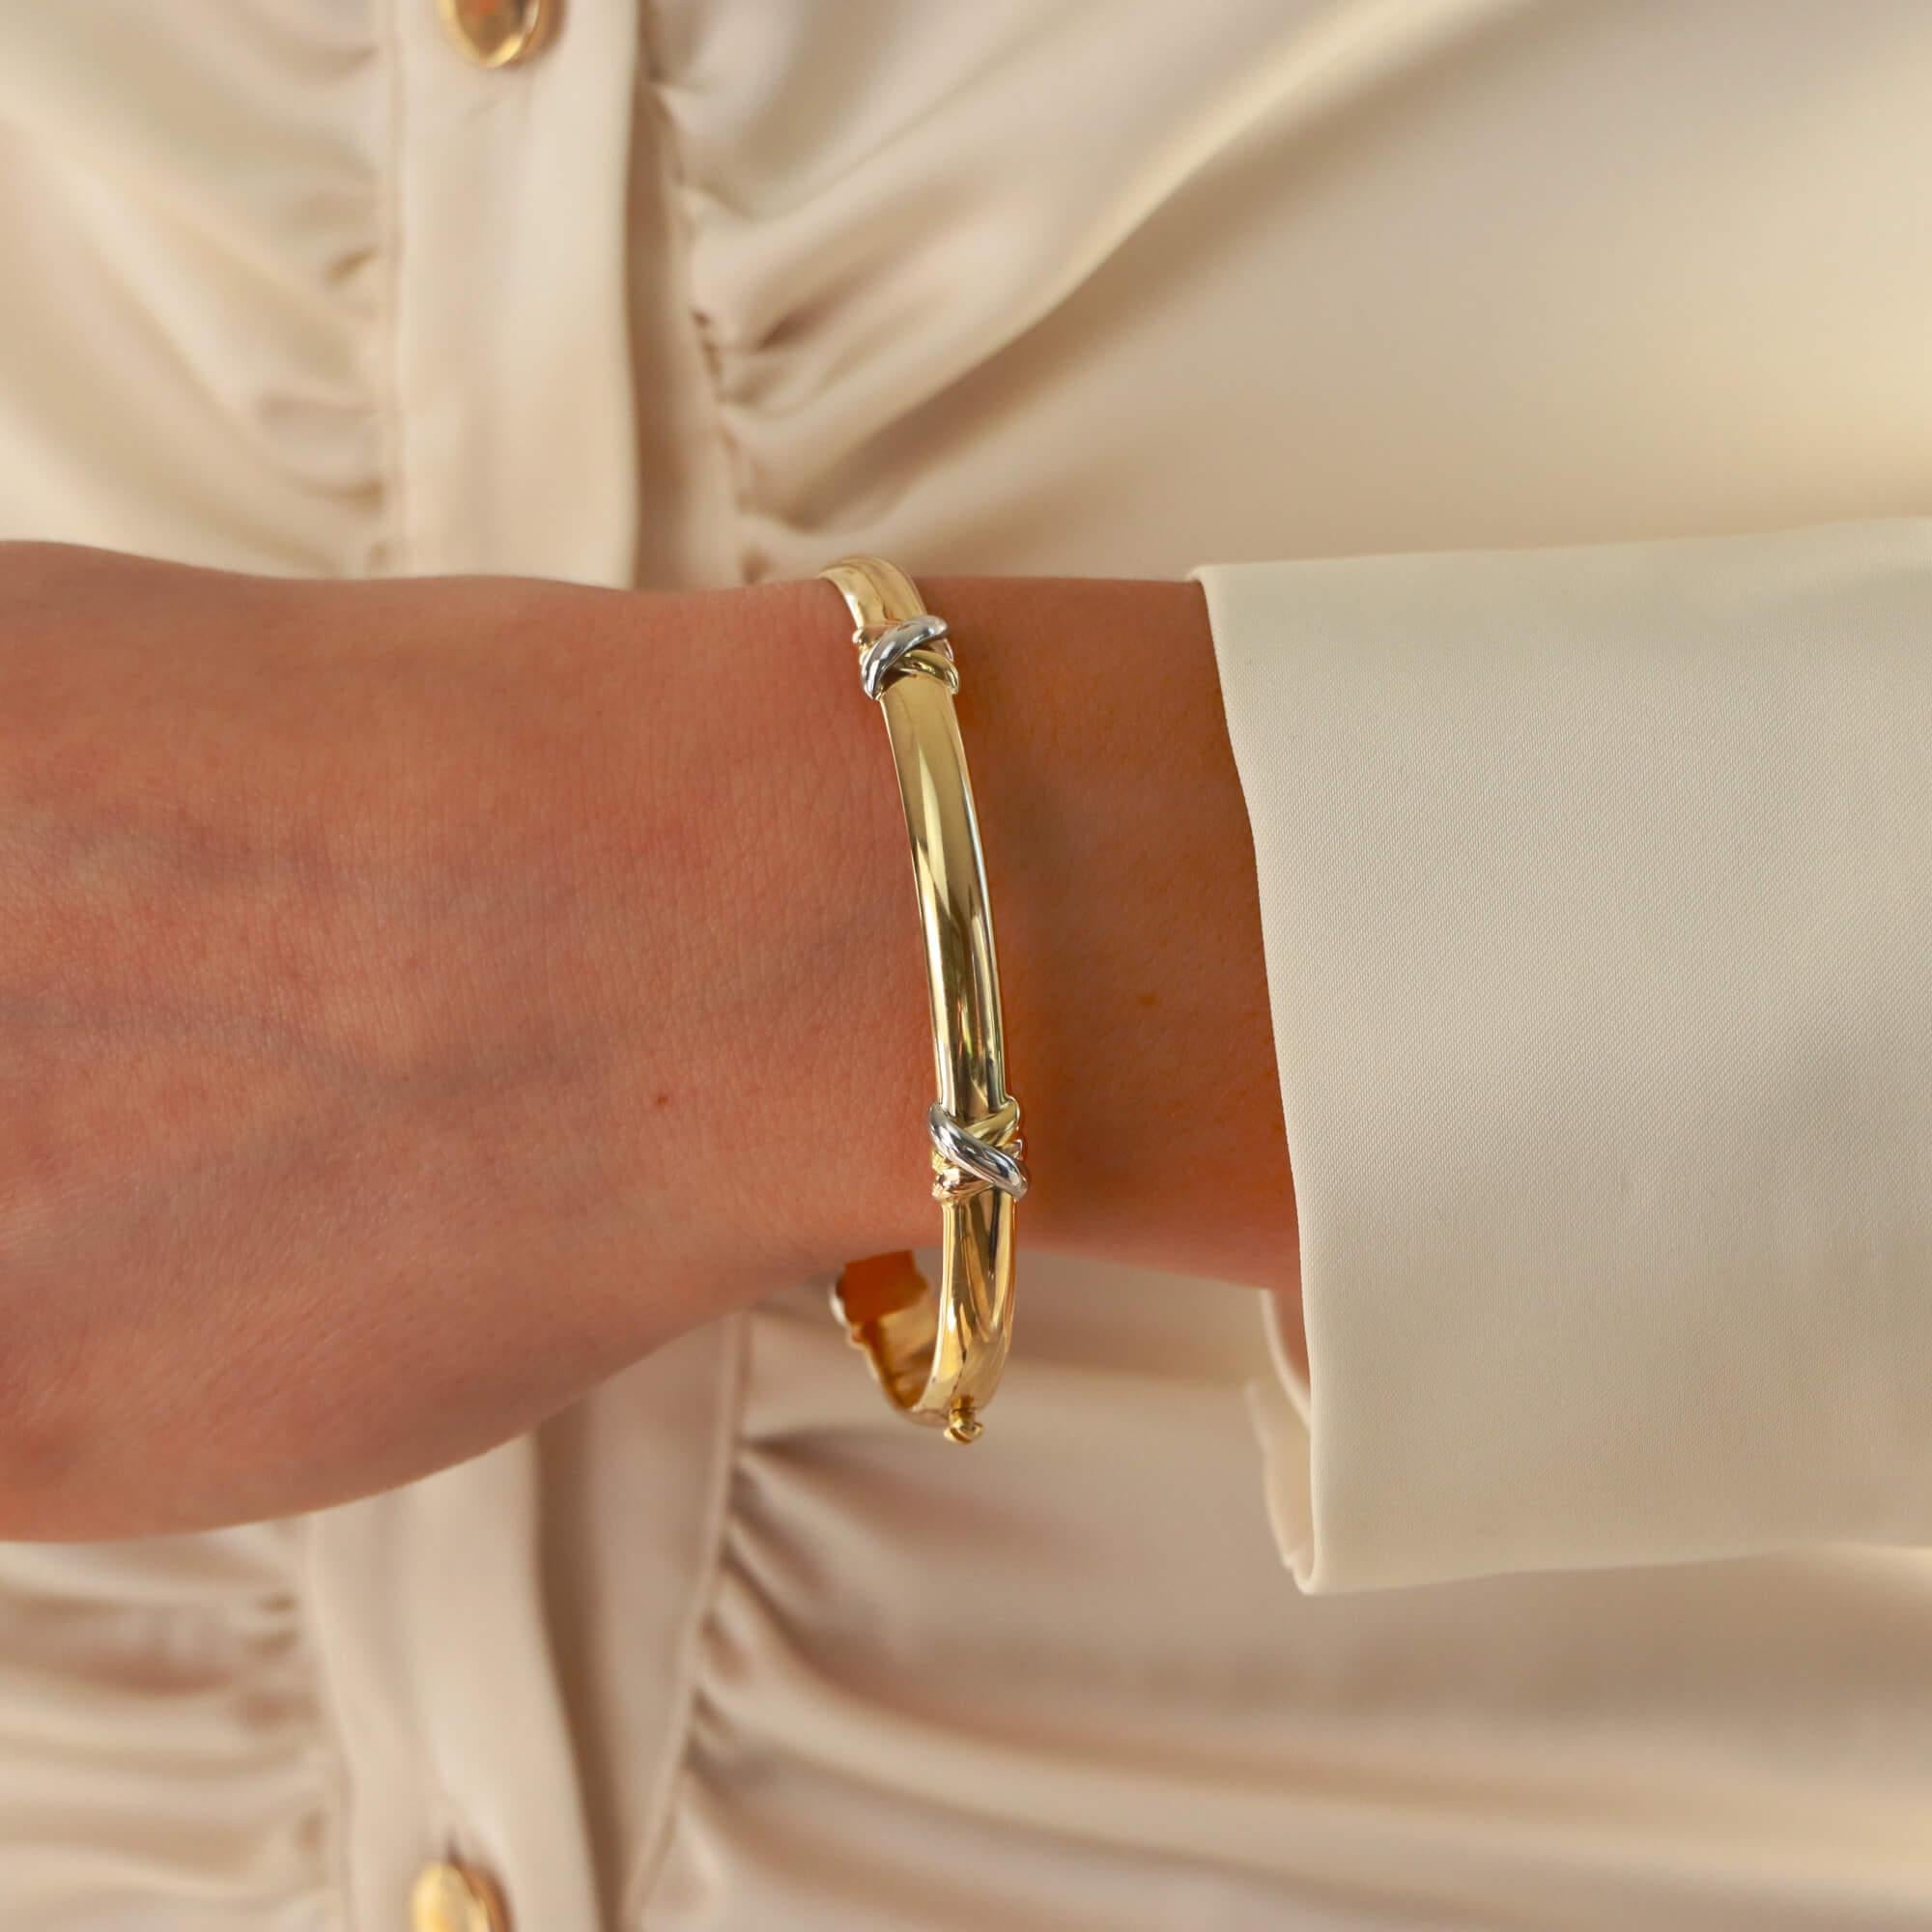 Un unique bracelet à vis 'Trinity Kiss' de Cartier, serti en or jaune, rose et blanc 18 carats.

Ressemblant à l'emblématique bracelet Love de Cartier, cette pièce en partage l'inspiration. Le bracelet est composé d'un bracelet en or jaune massif de